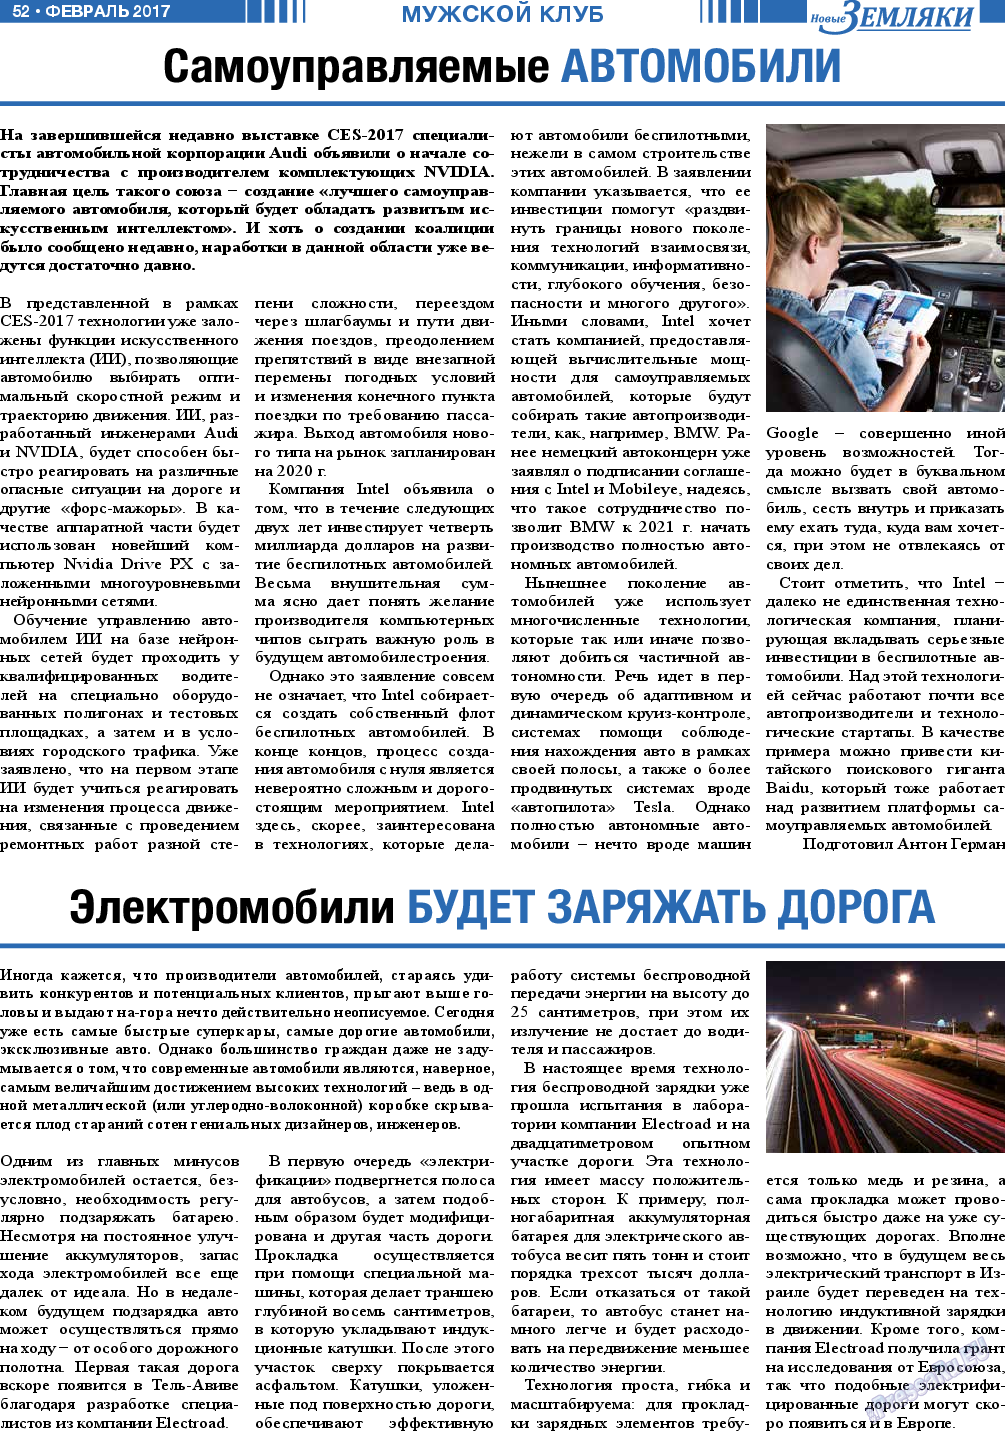 Новые Земляки, газета. 2017 №2 стр.52